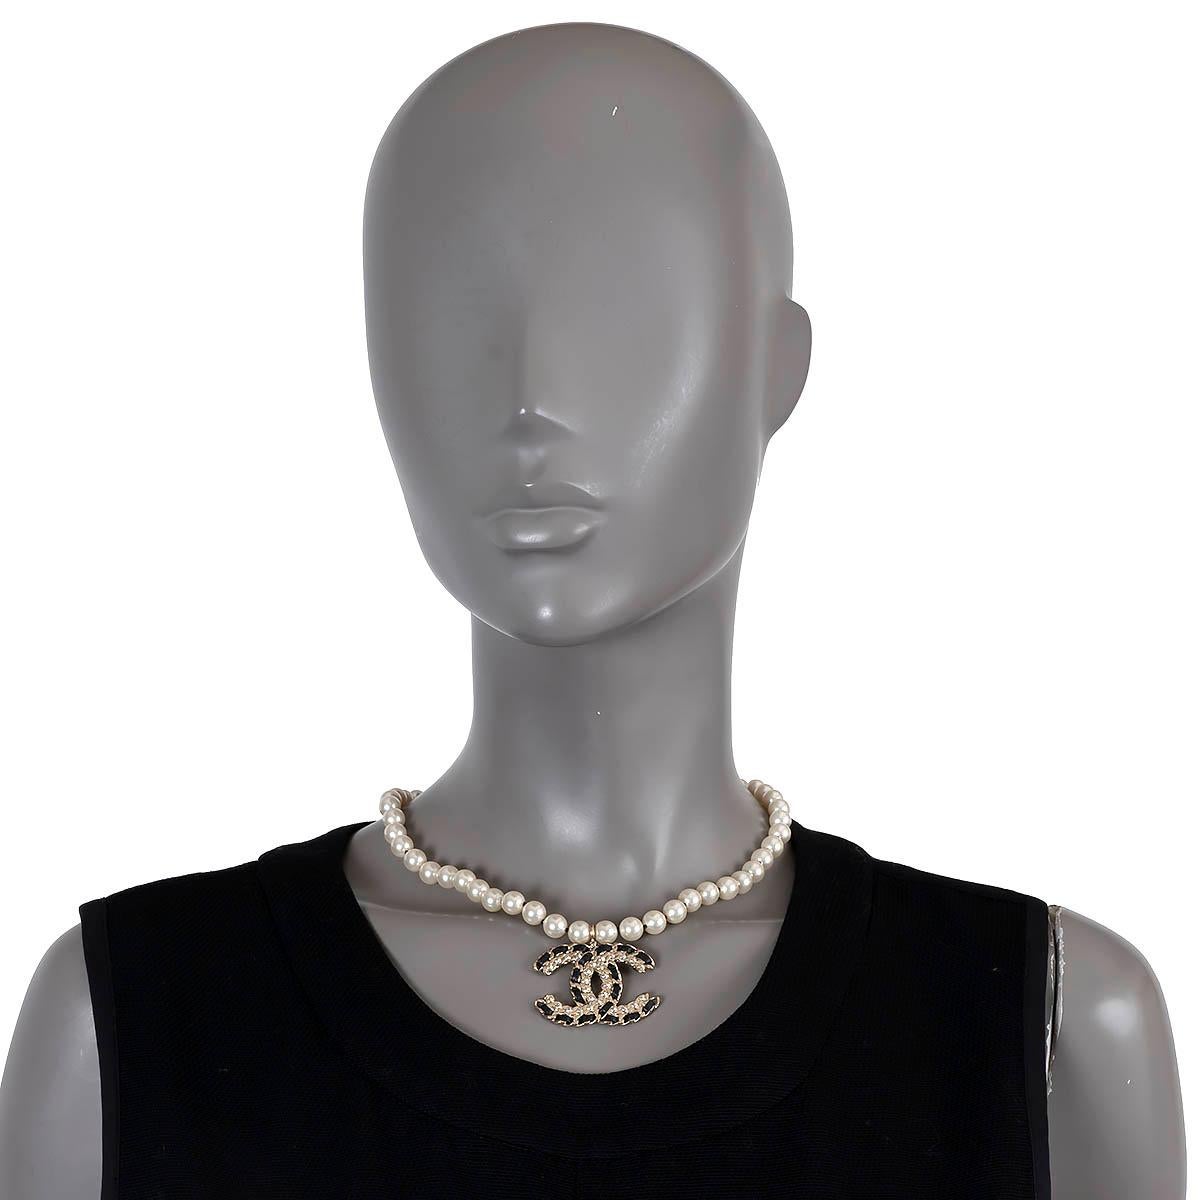 100% authentique Collier court Chanel en fausses perles de nacre blanche avec métal doré clair, cristaux et pendentif CC en cuir noir. Fermeture à griffes avec chaîne réglable. A été porté et est en excellent état. Livré avec un sac à poussière.